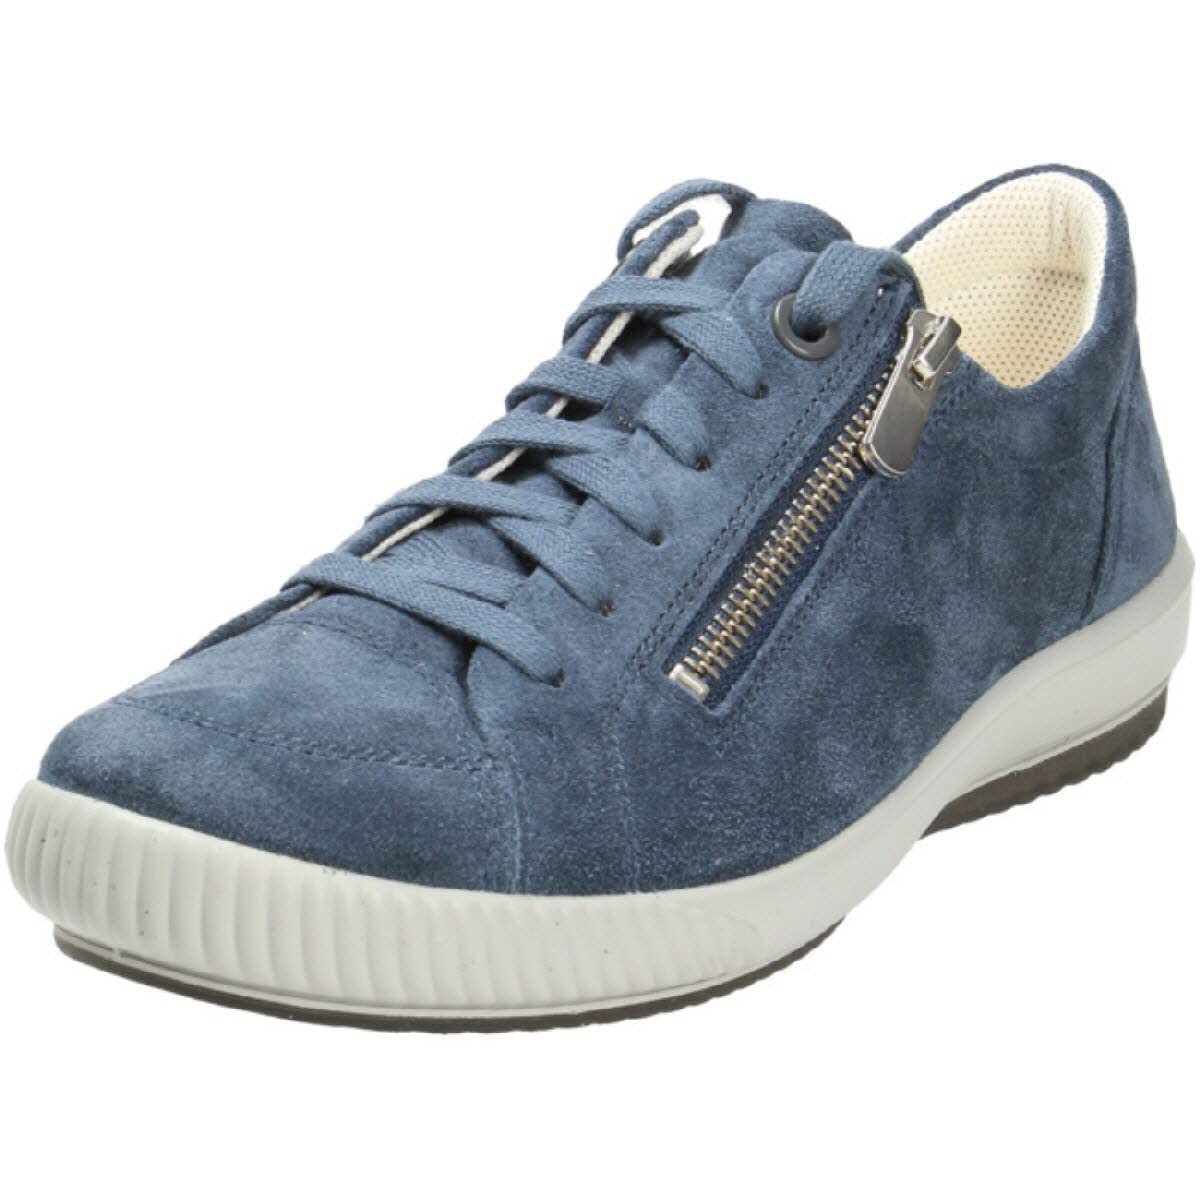 Legero Damen Tanaro Sneaker, Indacox Blau 8600, 36 EU